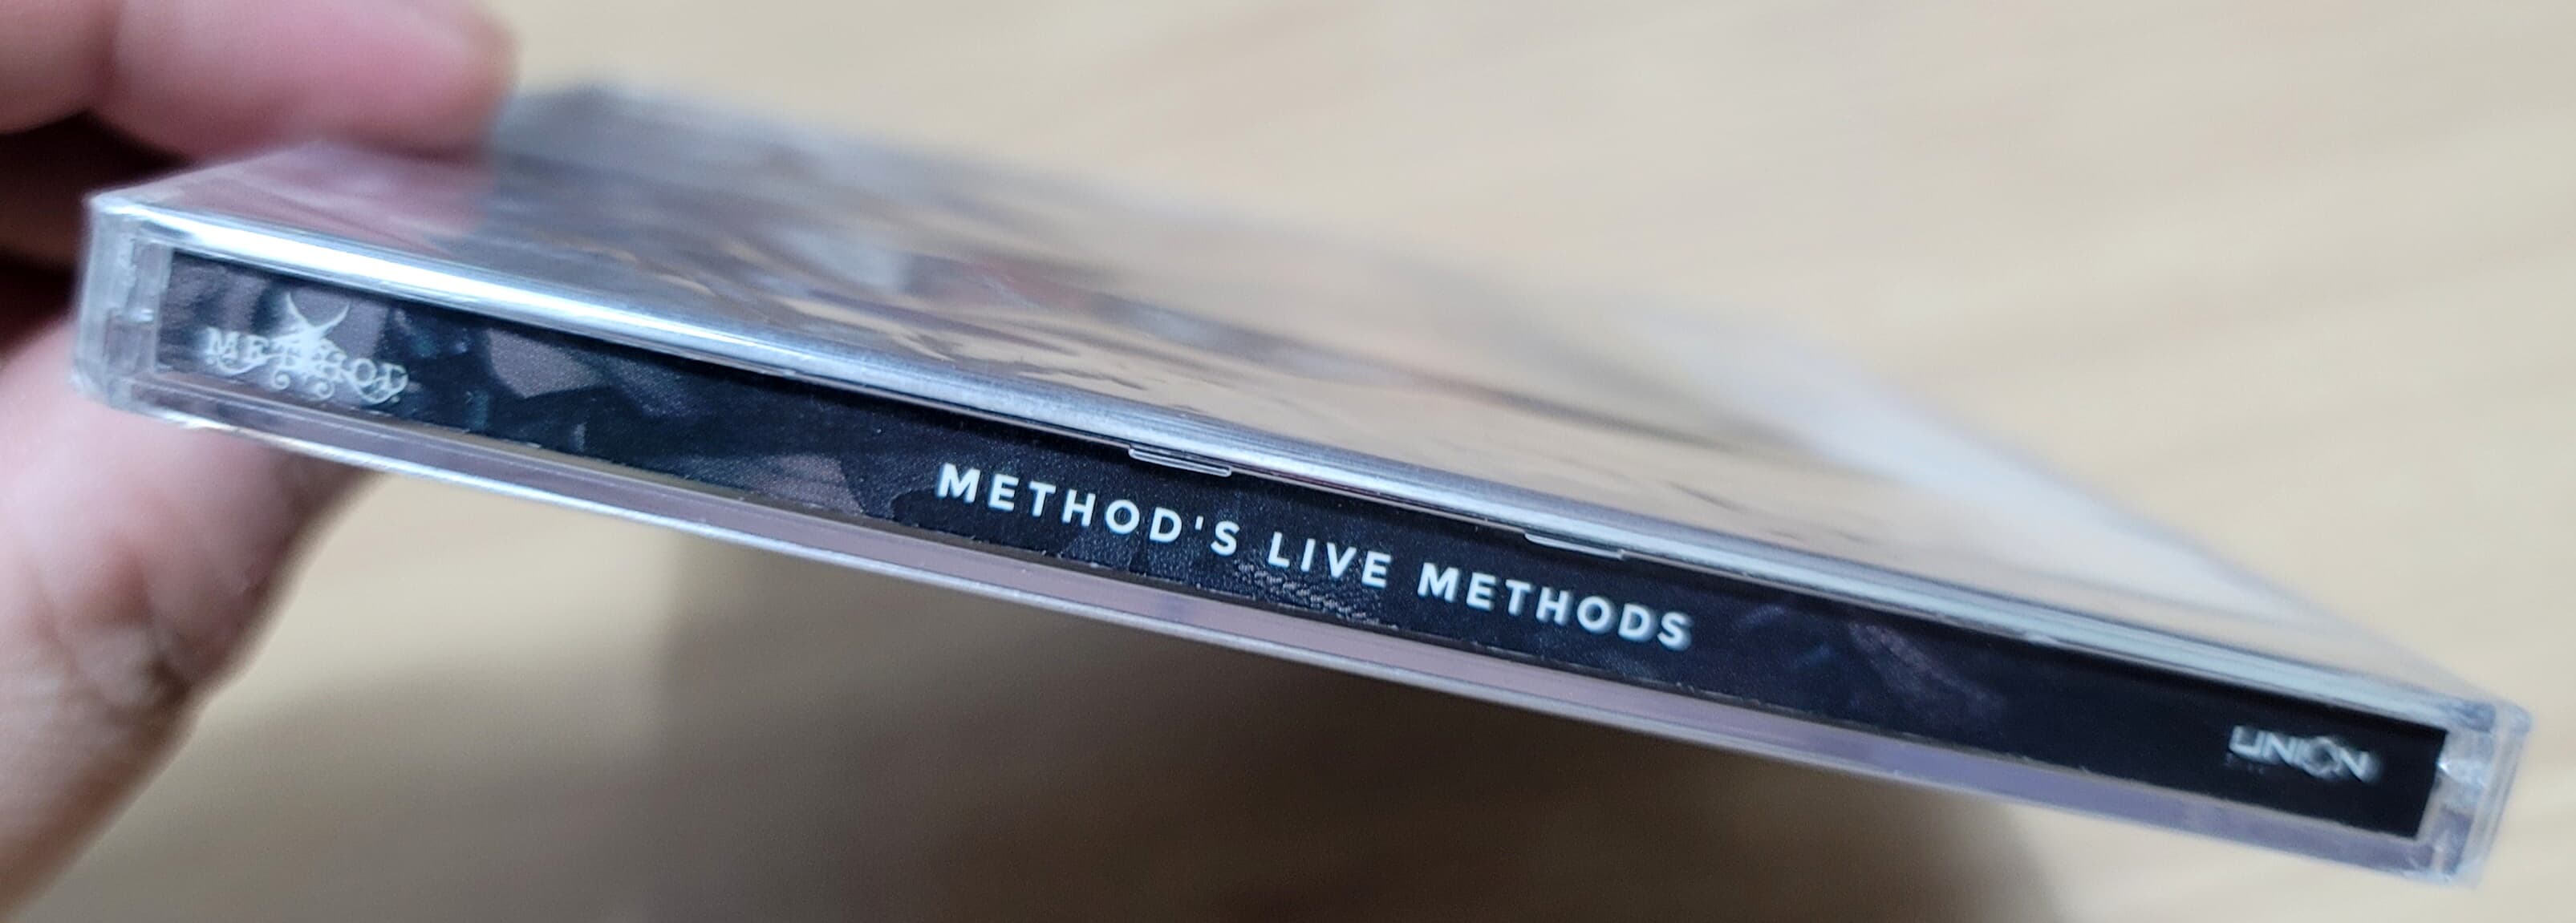 (미개봉 희귀 한정반) Method (메써드) - Method's Live Methods